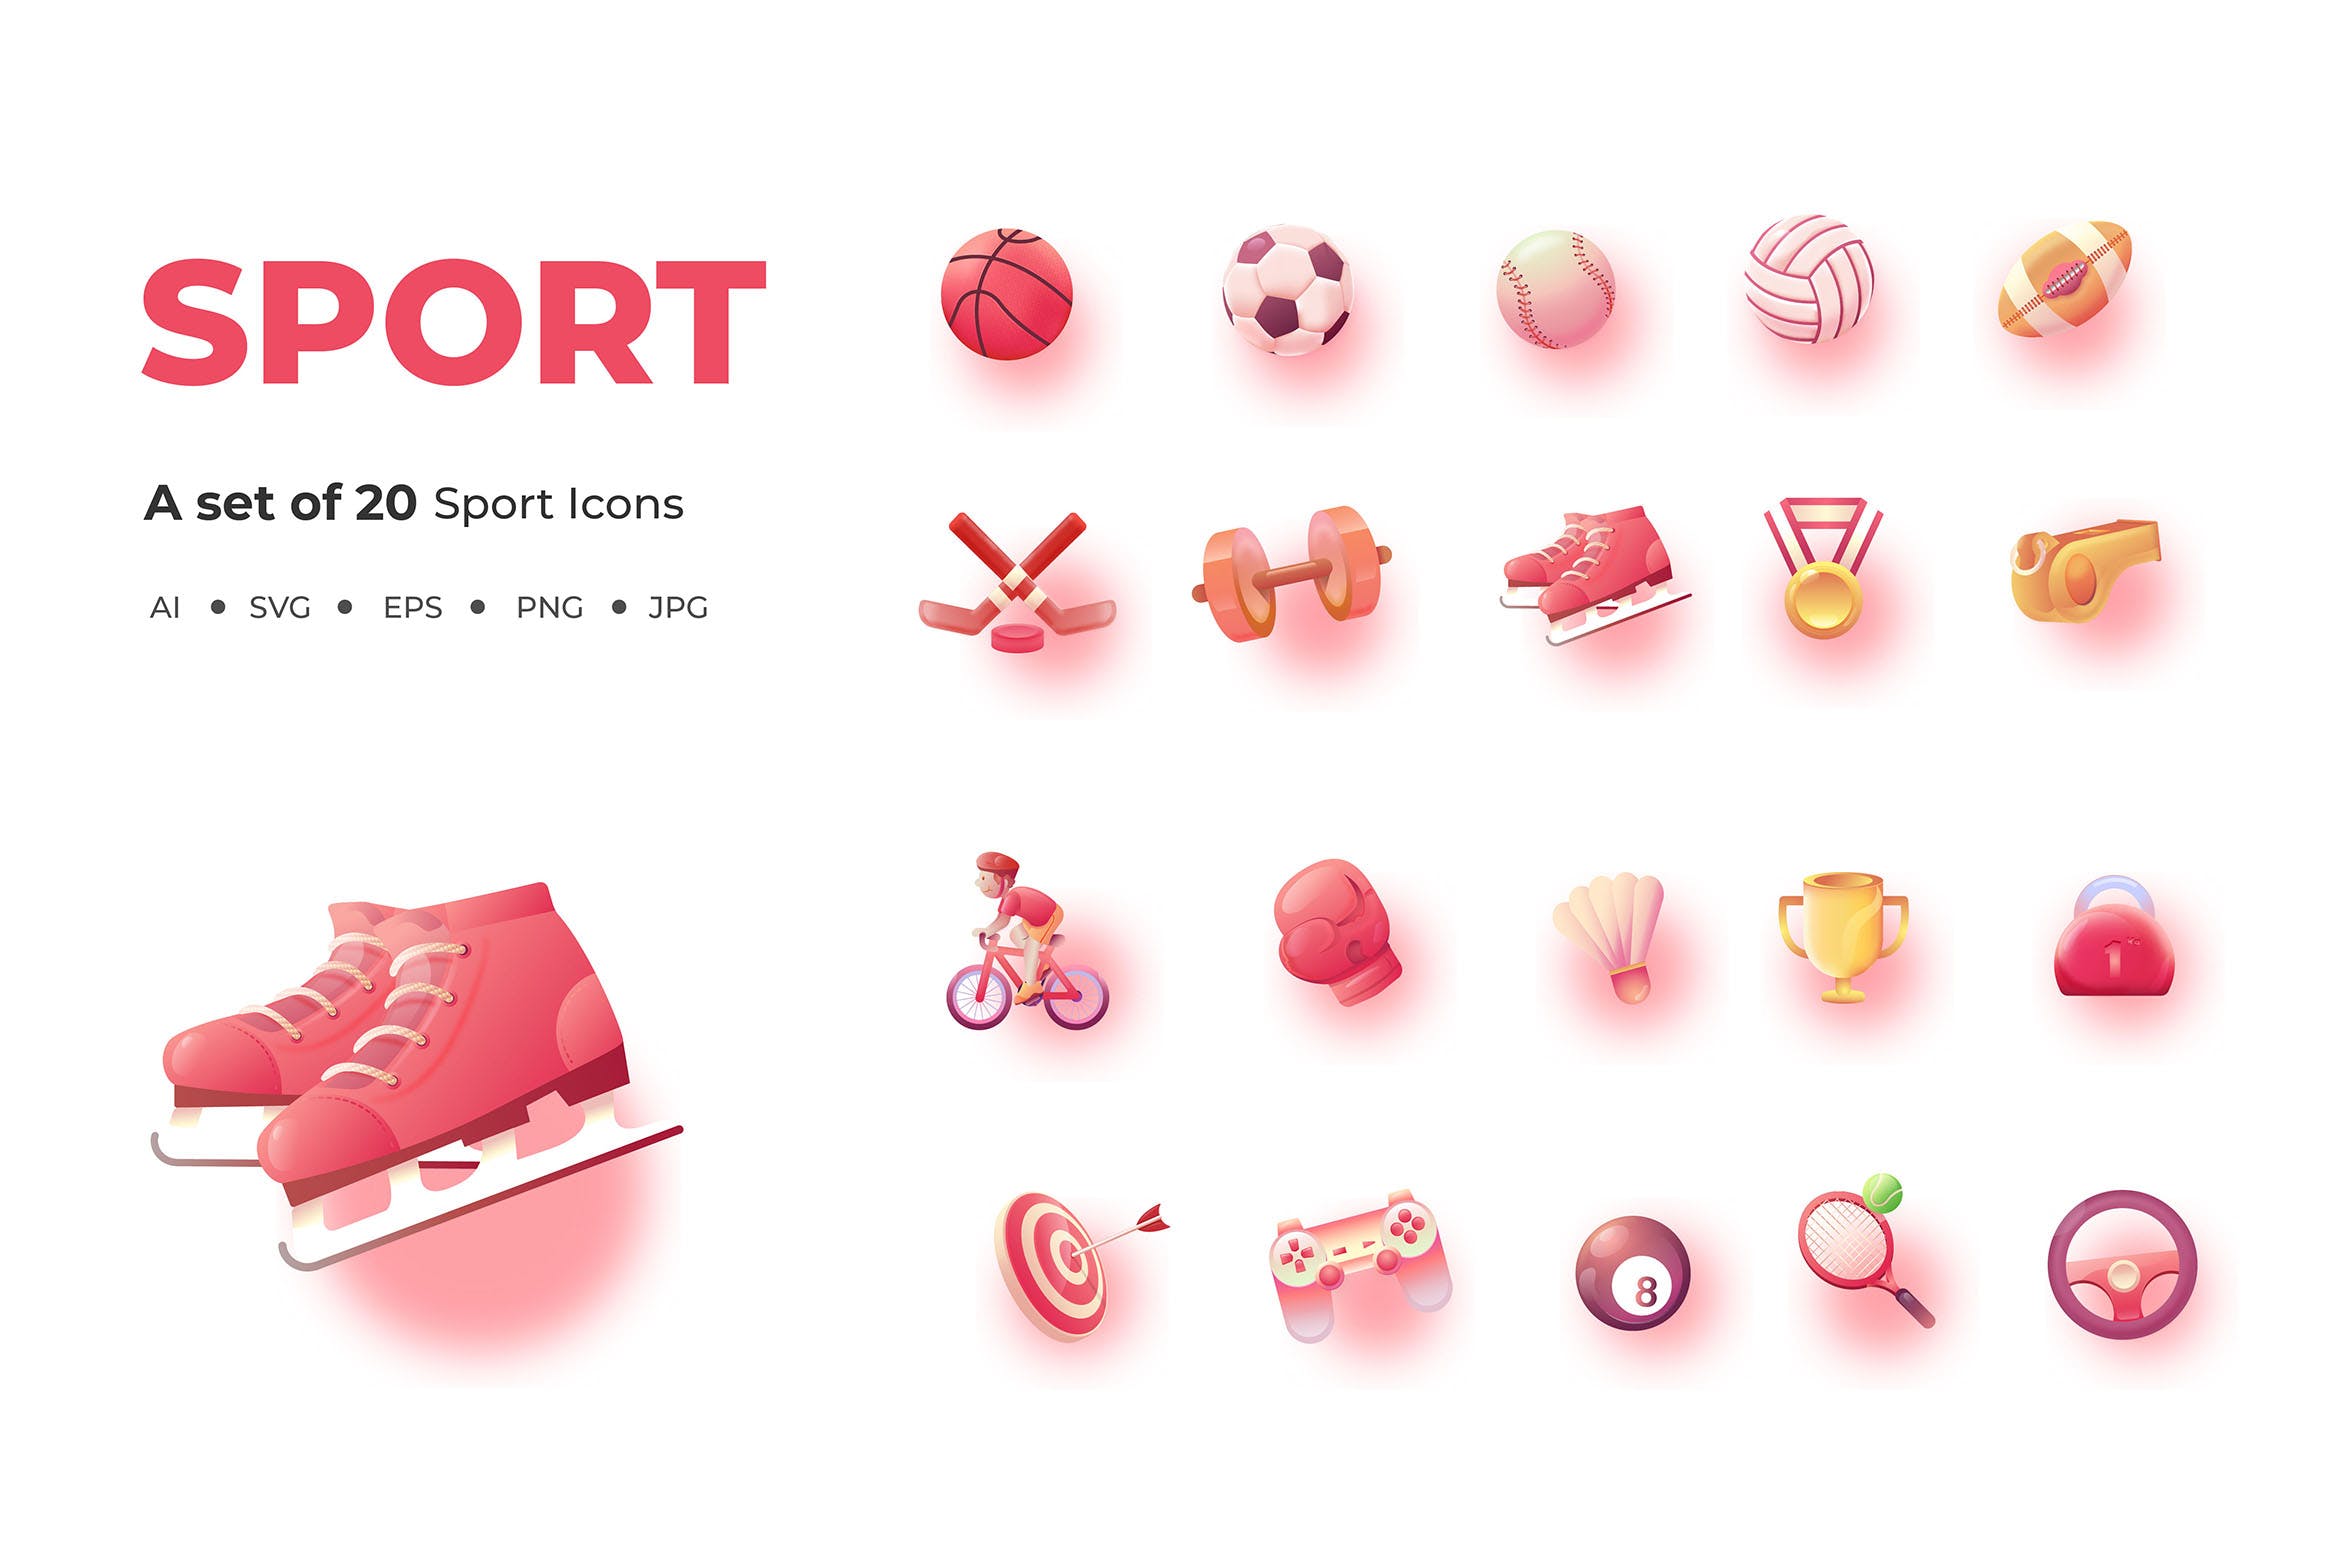 20枚体育运动行业主题矢量图标素材 20 Sport Icons插图